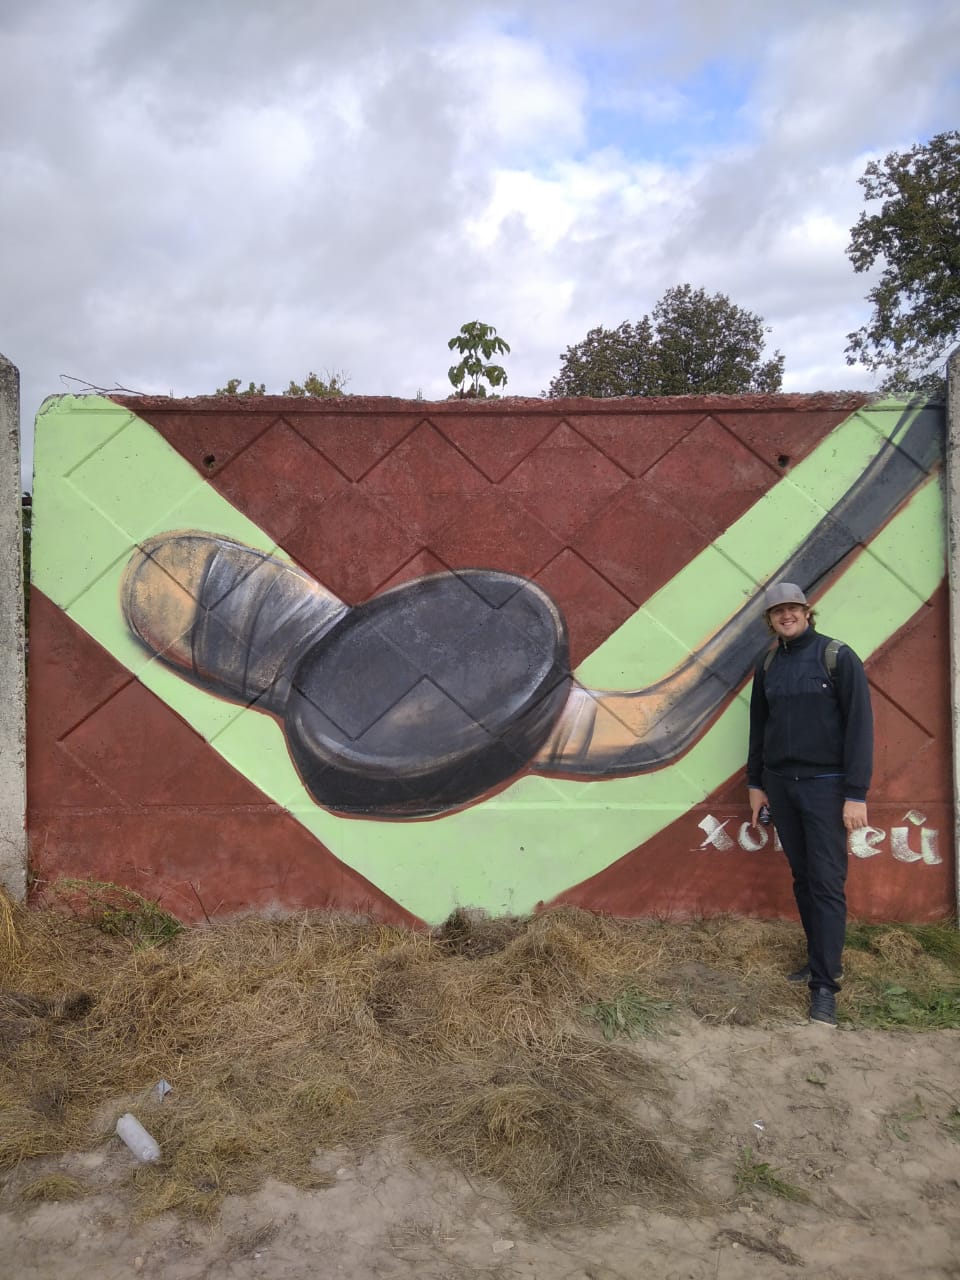 Брянский художник украсил граффити стадион в Дятькове